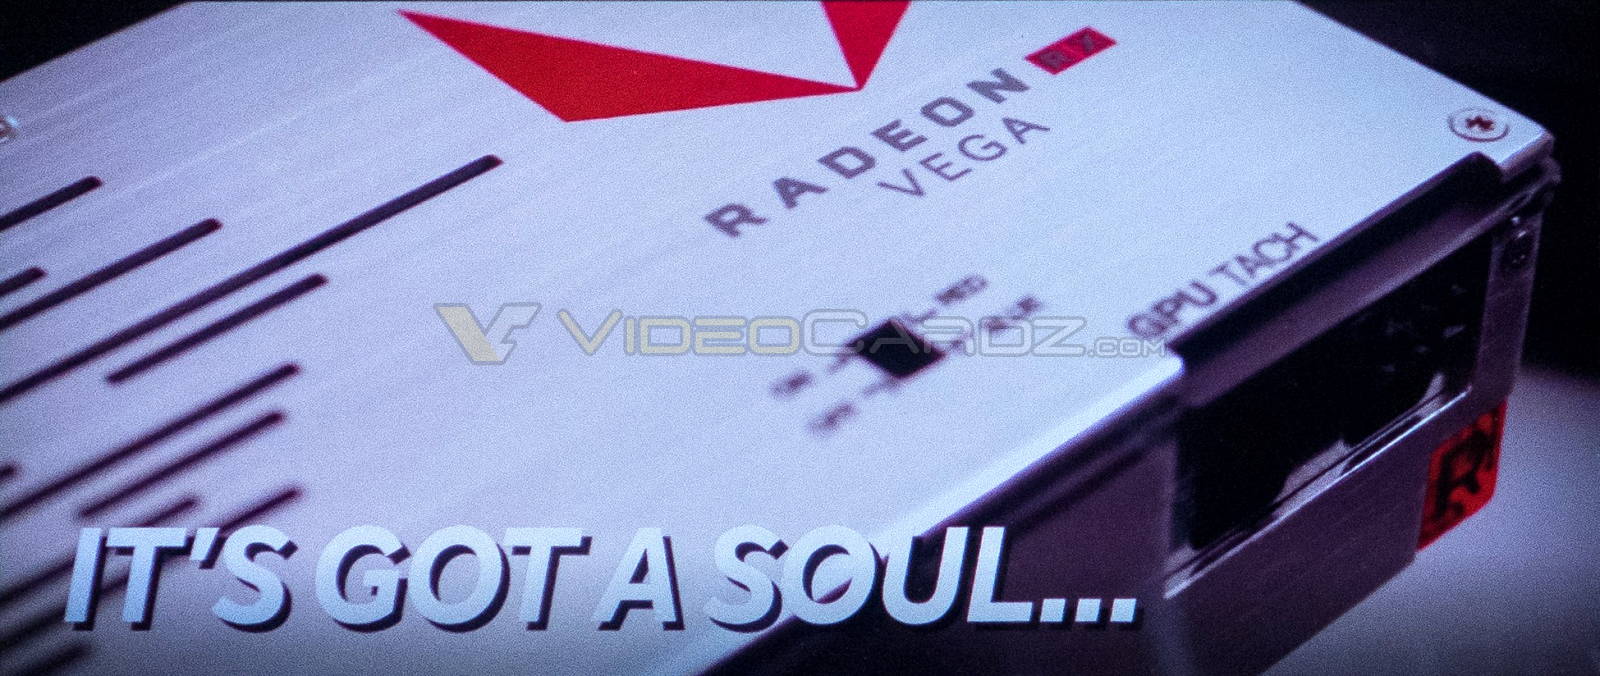 AMD Vega kartların kutu görseli sızdırıldı